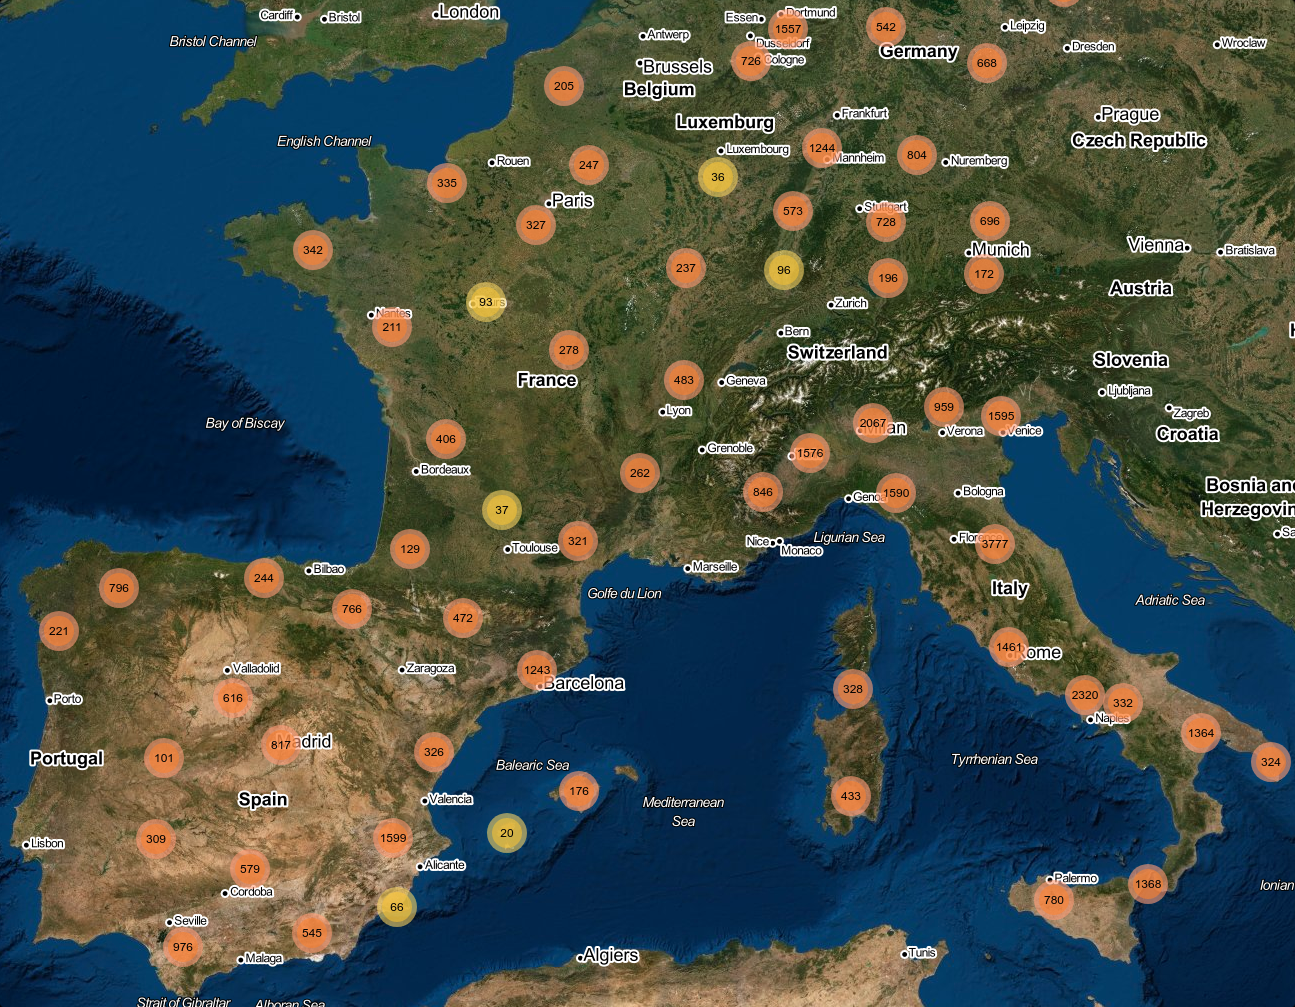 Mapa de Europa con todas las estaciones de servicio con los precios actualizados que hay en Eurocharging.eu